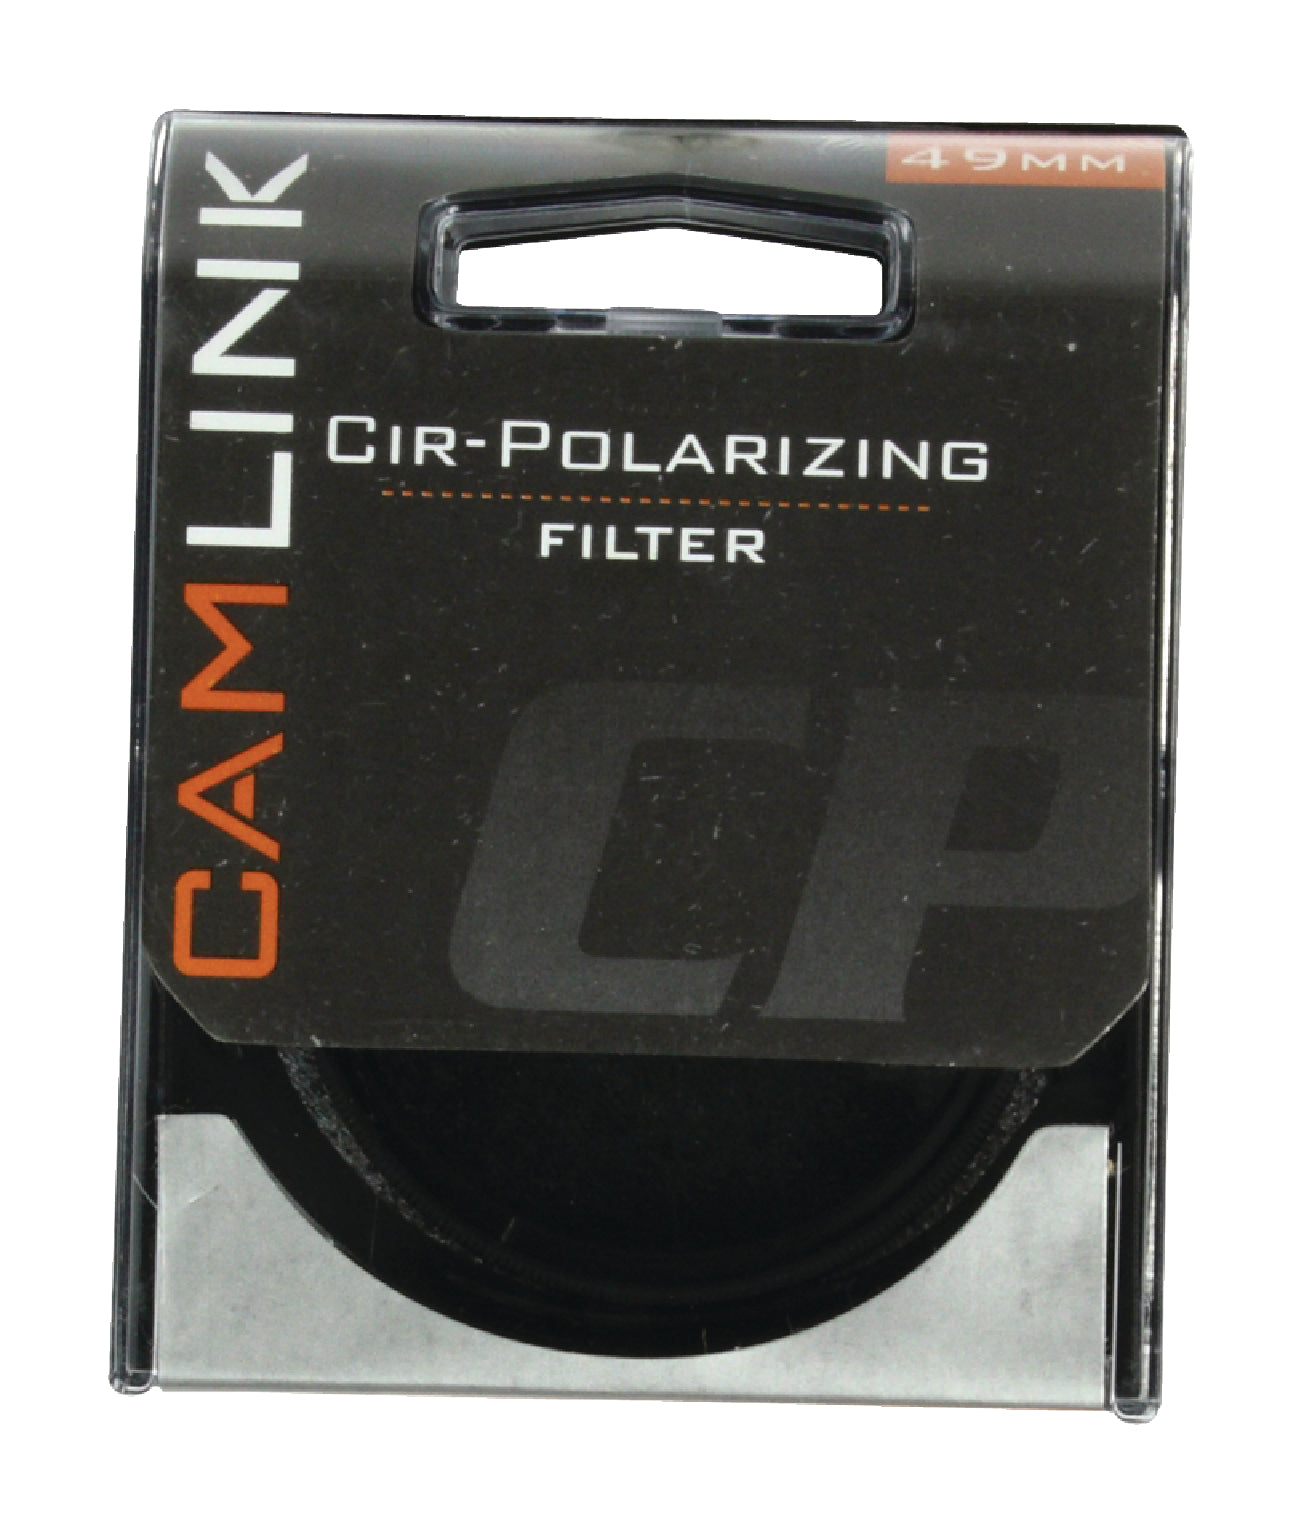 CPL Filter 49 mm